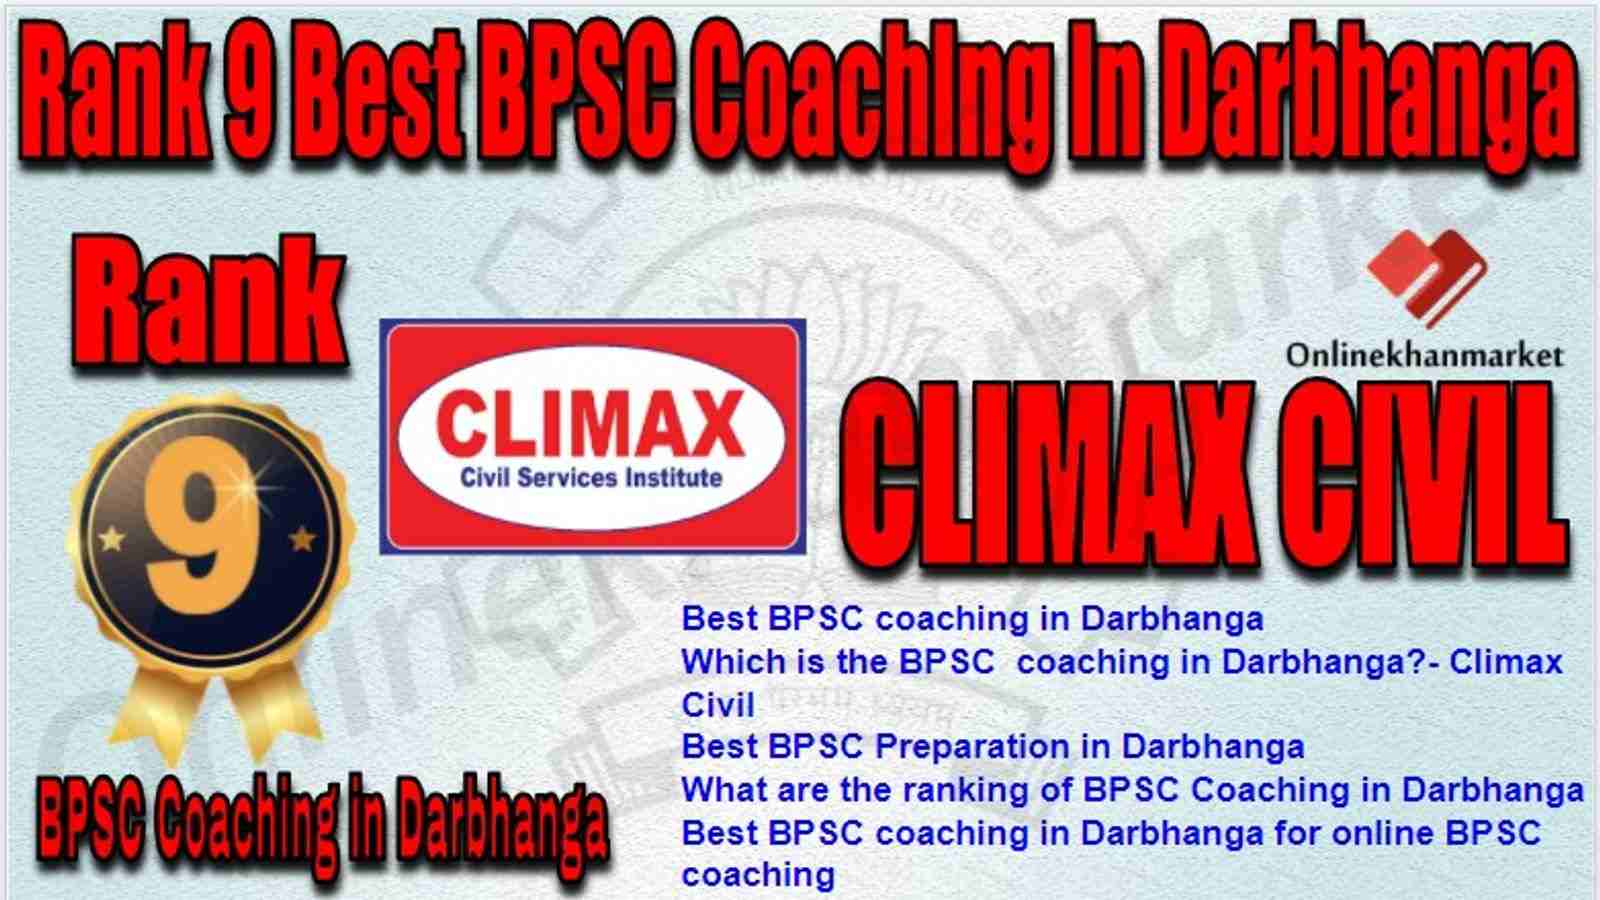 Rank 9 Best BPSC Coaching in darbhanga